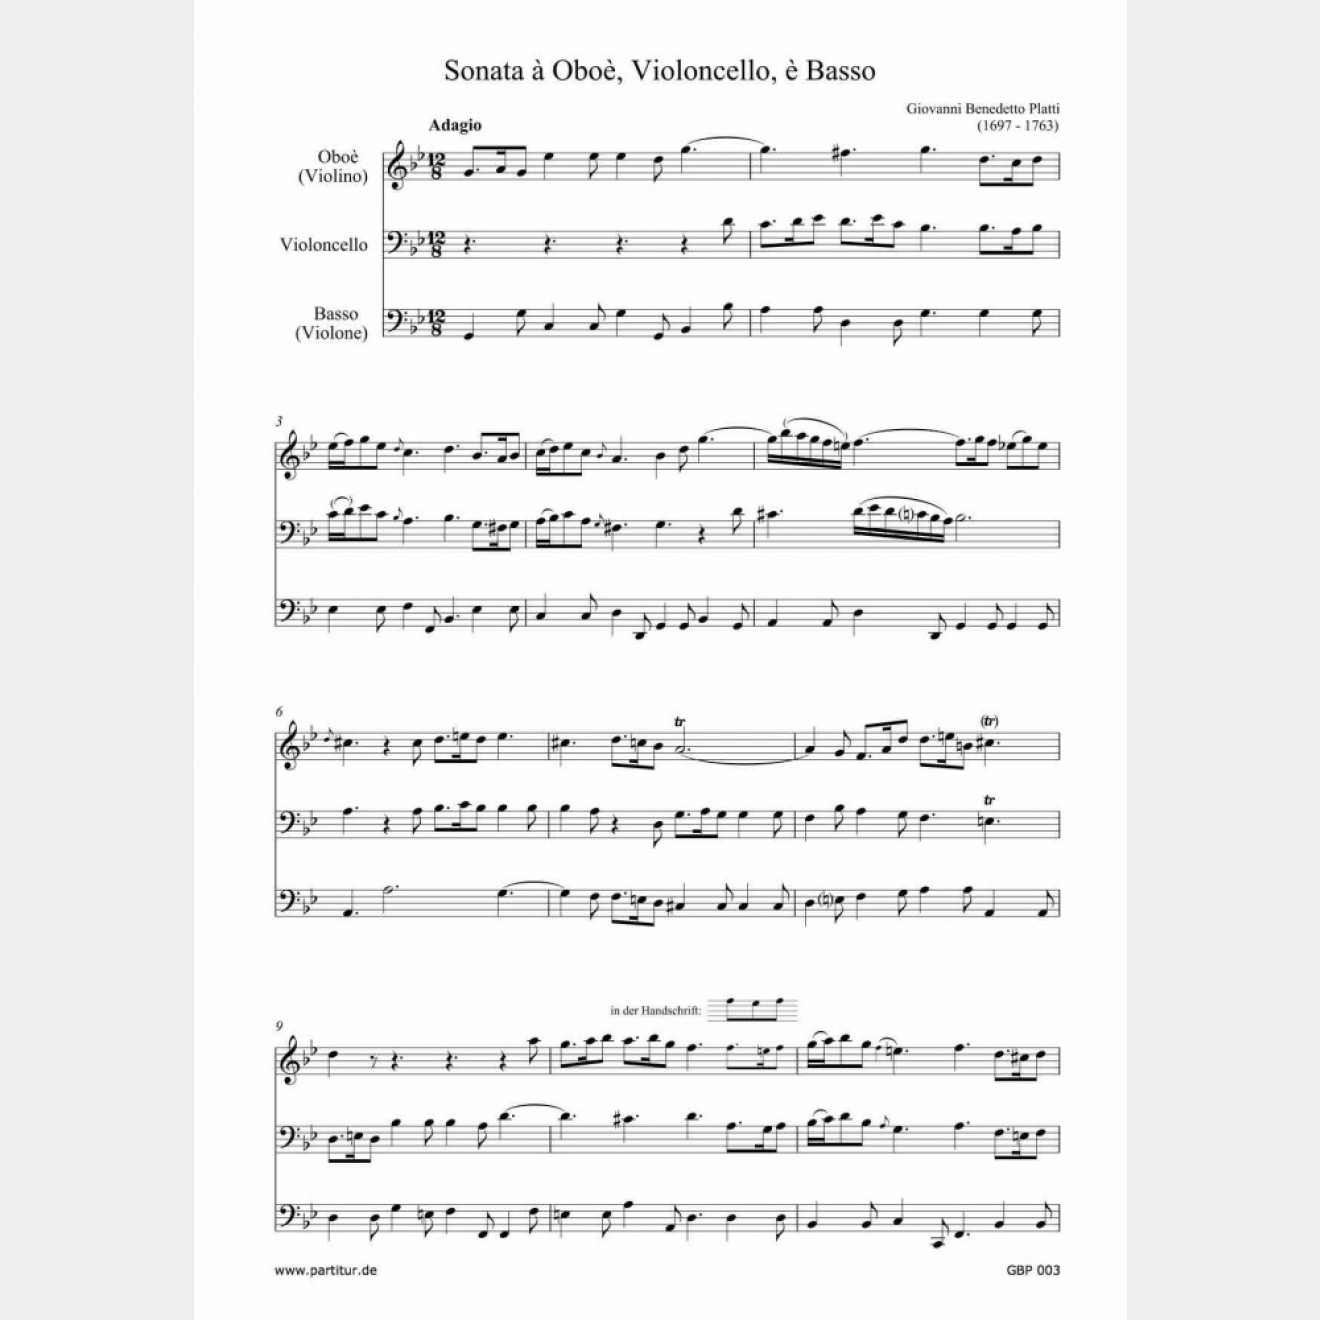 Sonata à Oboè, Violoncello è Basso (G-Moll, WD 692)